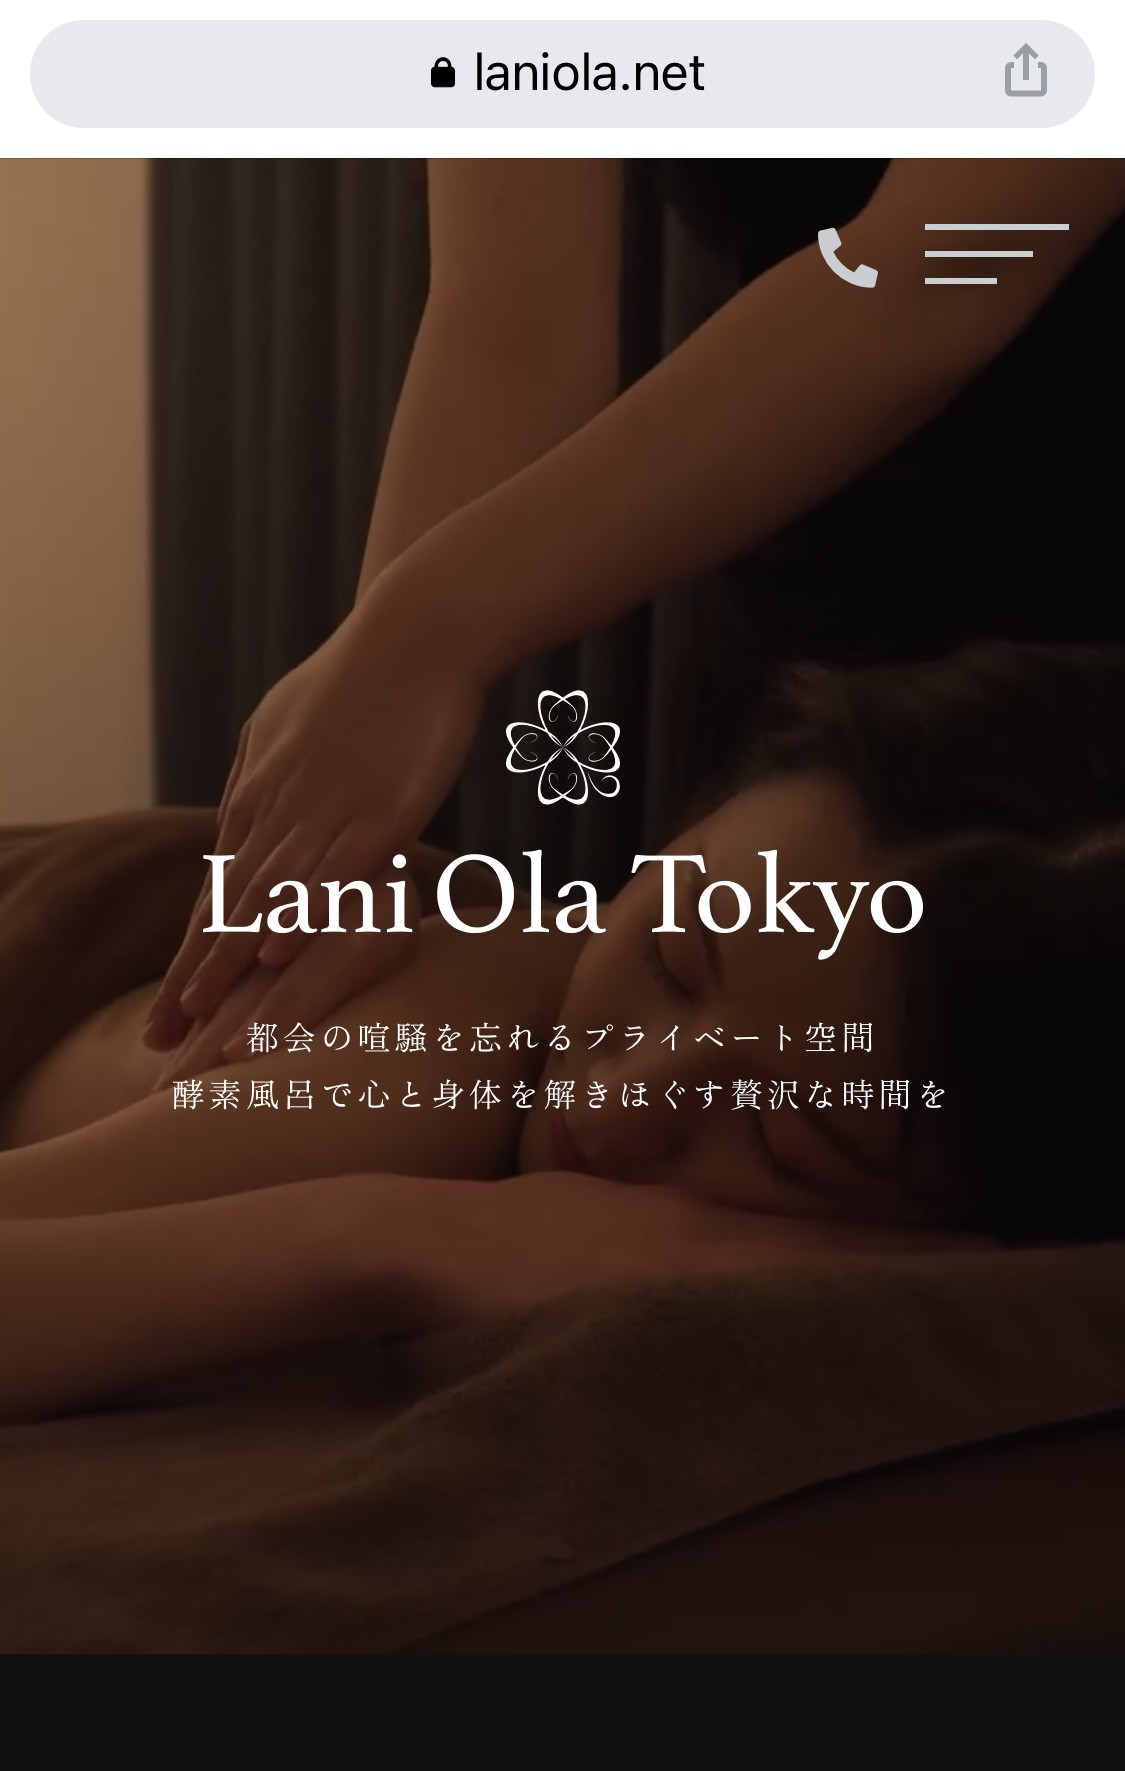 酵素風呂の「Lani Ola Tokyo」ホームページのヘッダー動画を作成